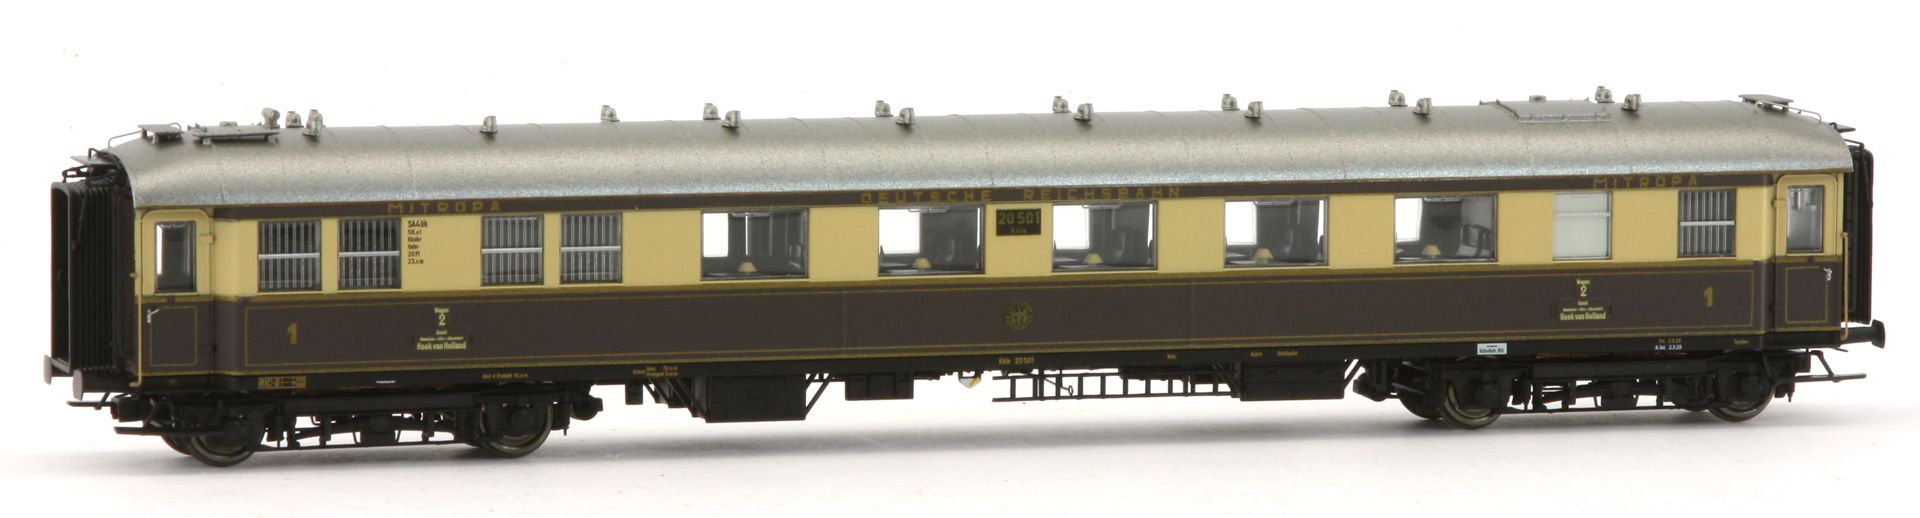 Brawa 50682 - 6er Set 'Rheingold' mit BR 01 und Personenzug, DRG, Ep.II, DC-Sound-Extra